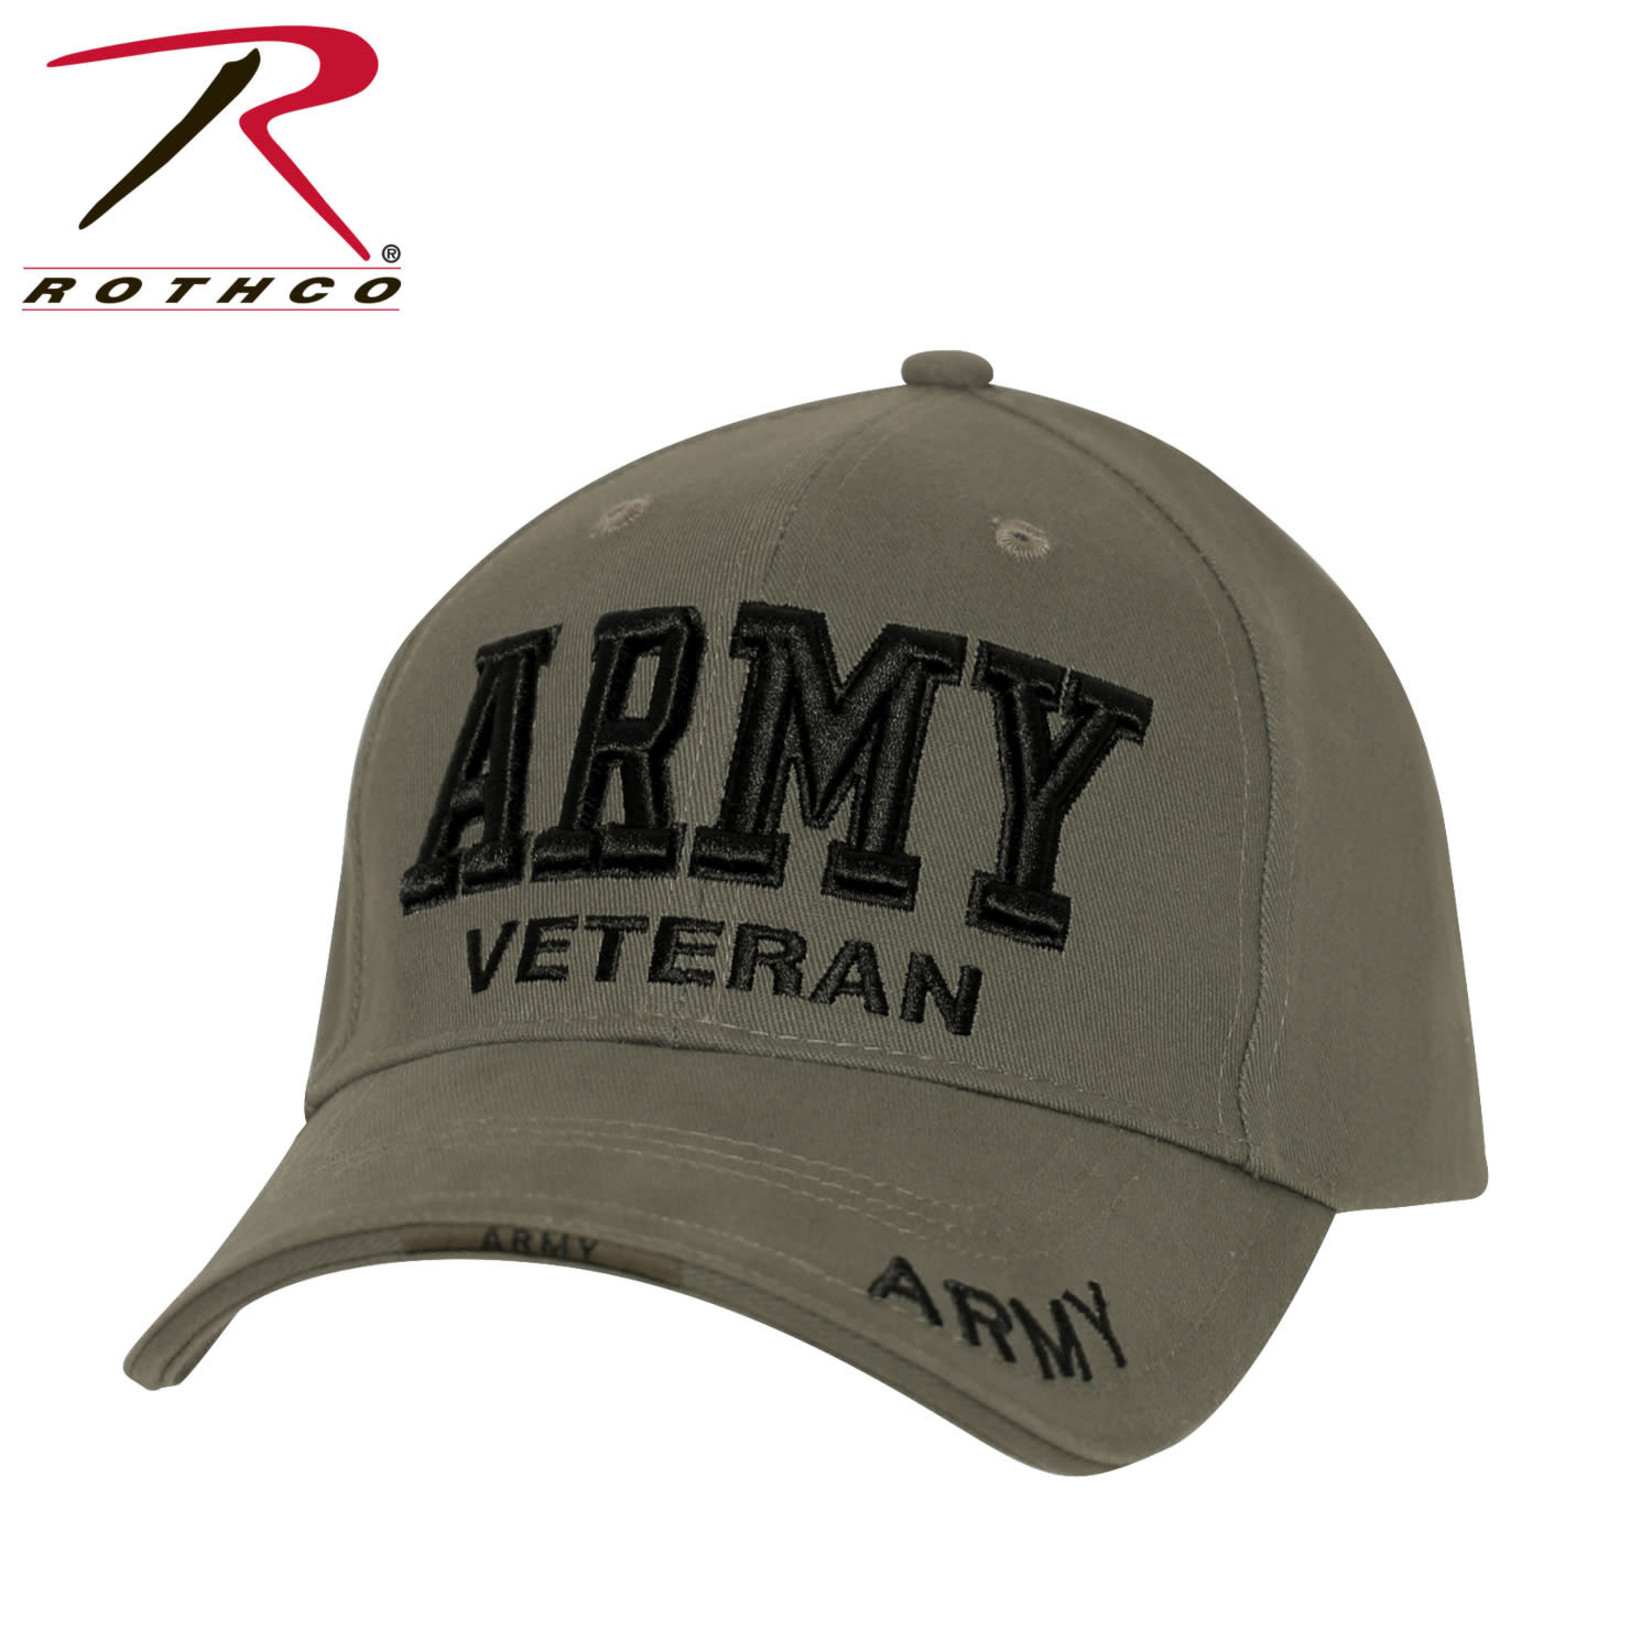 Rothco Rothco Army Veteran Hat